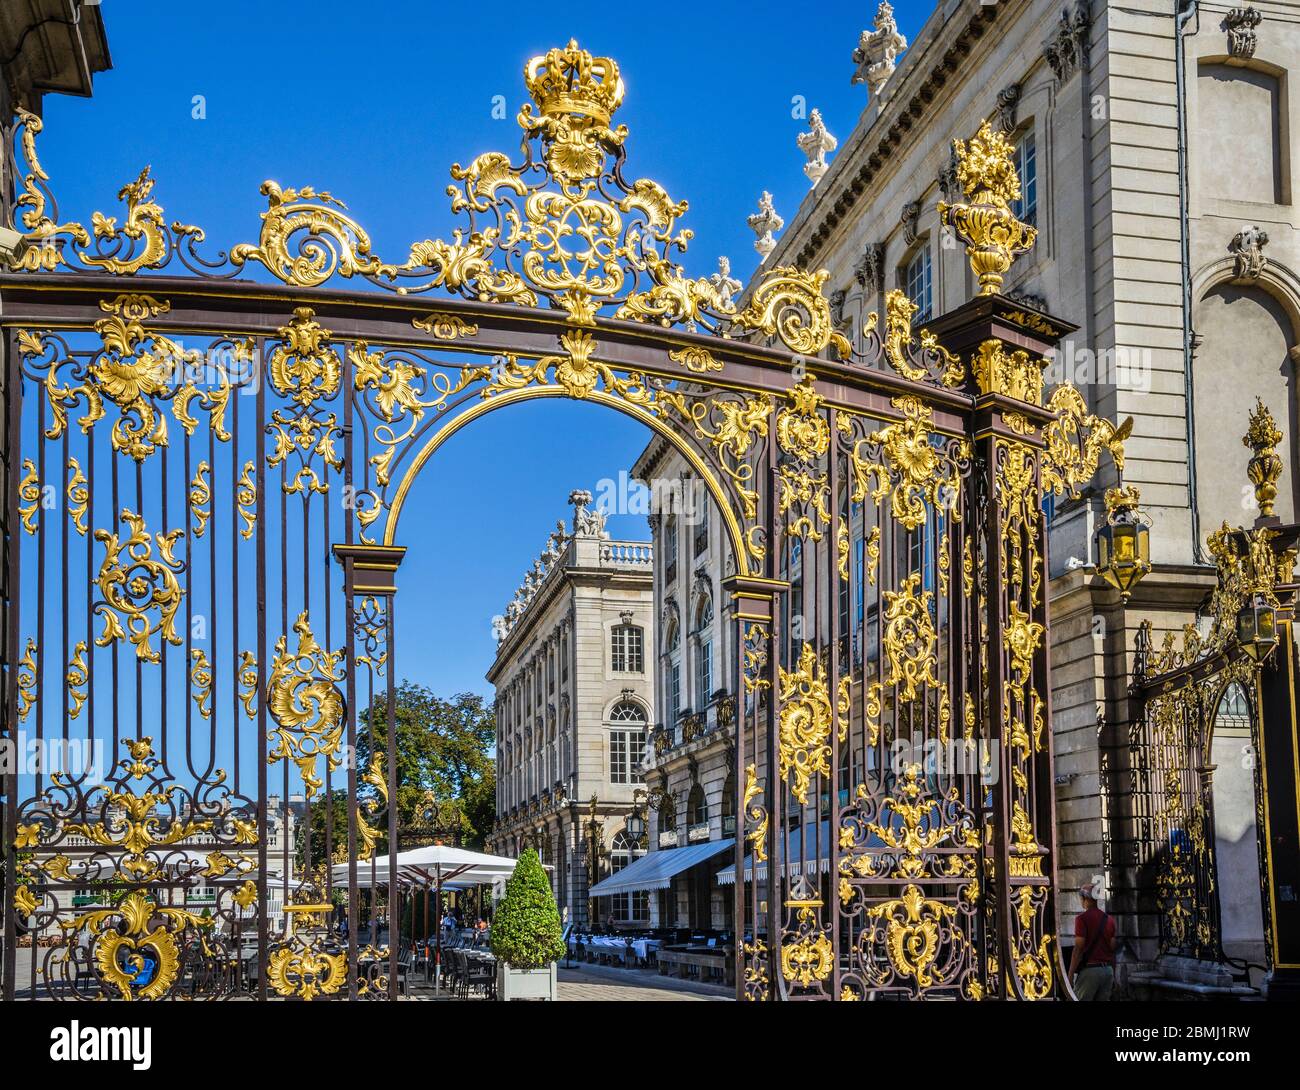 Cancello in ferro battuto dorato che conduce a Place Stanislas nel centro di Nancy, a causa di queste porte, Nancy è soprannominata Città con Golden Gates (Ville Foto Stock